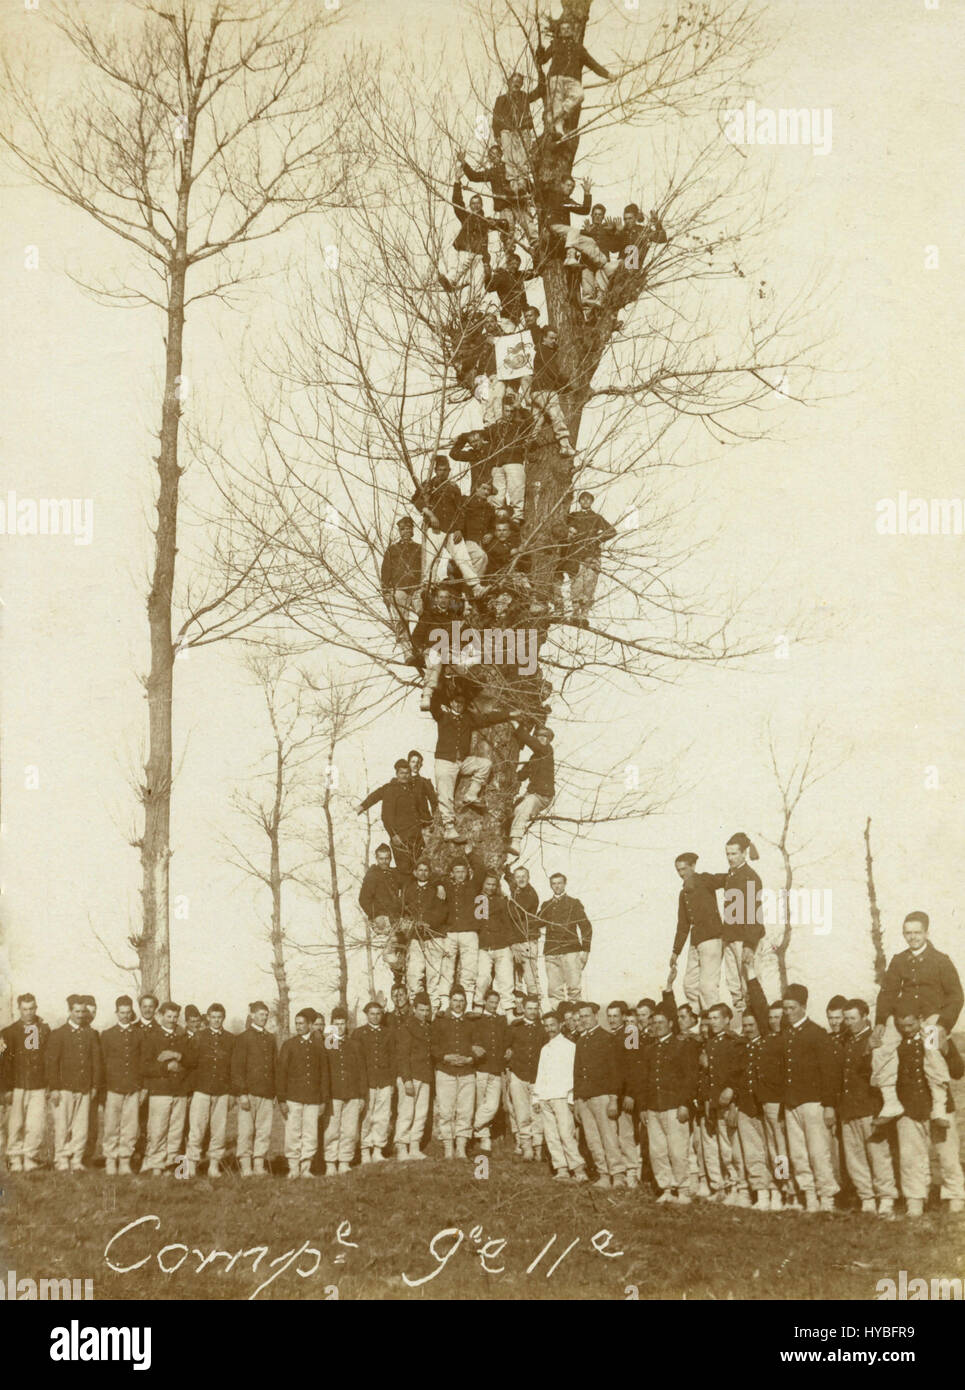 Italian Royal Army training, 1910 Stock Photo